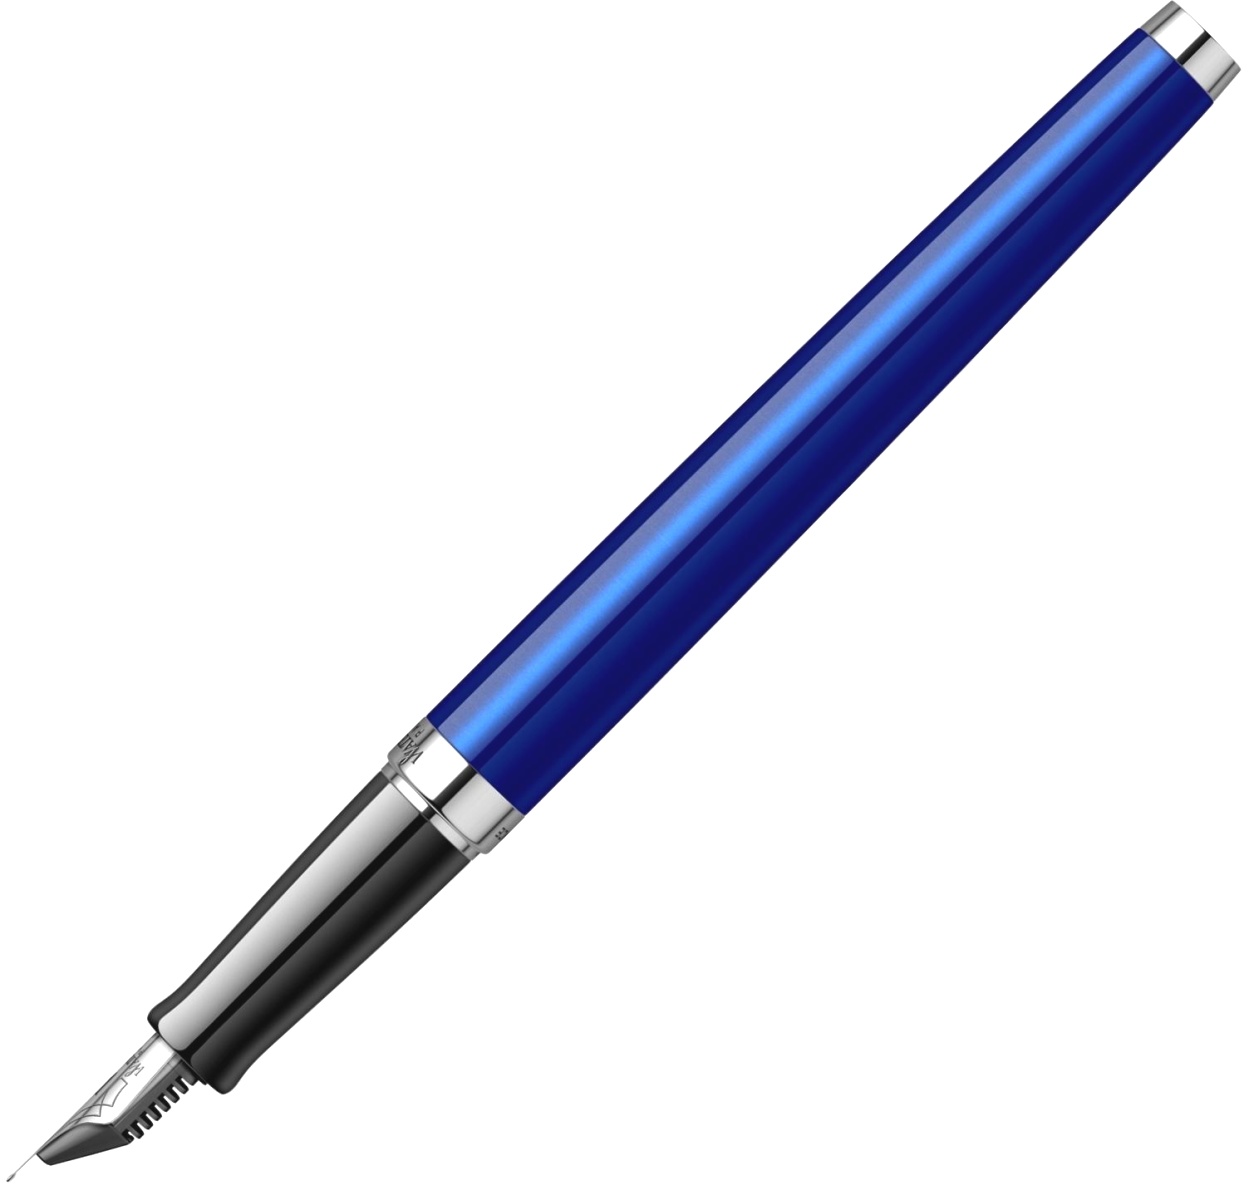 Набор: Ручка перьевая Waterman Hemisphere 2018, Bright Blue CT (Перо F) + Подарочная коробка Waterman с фирменной записной книжкой, фото 6